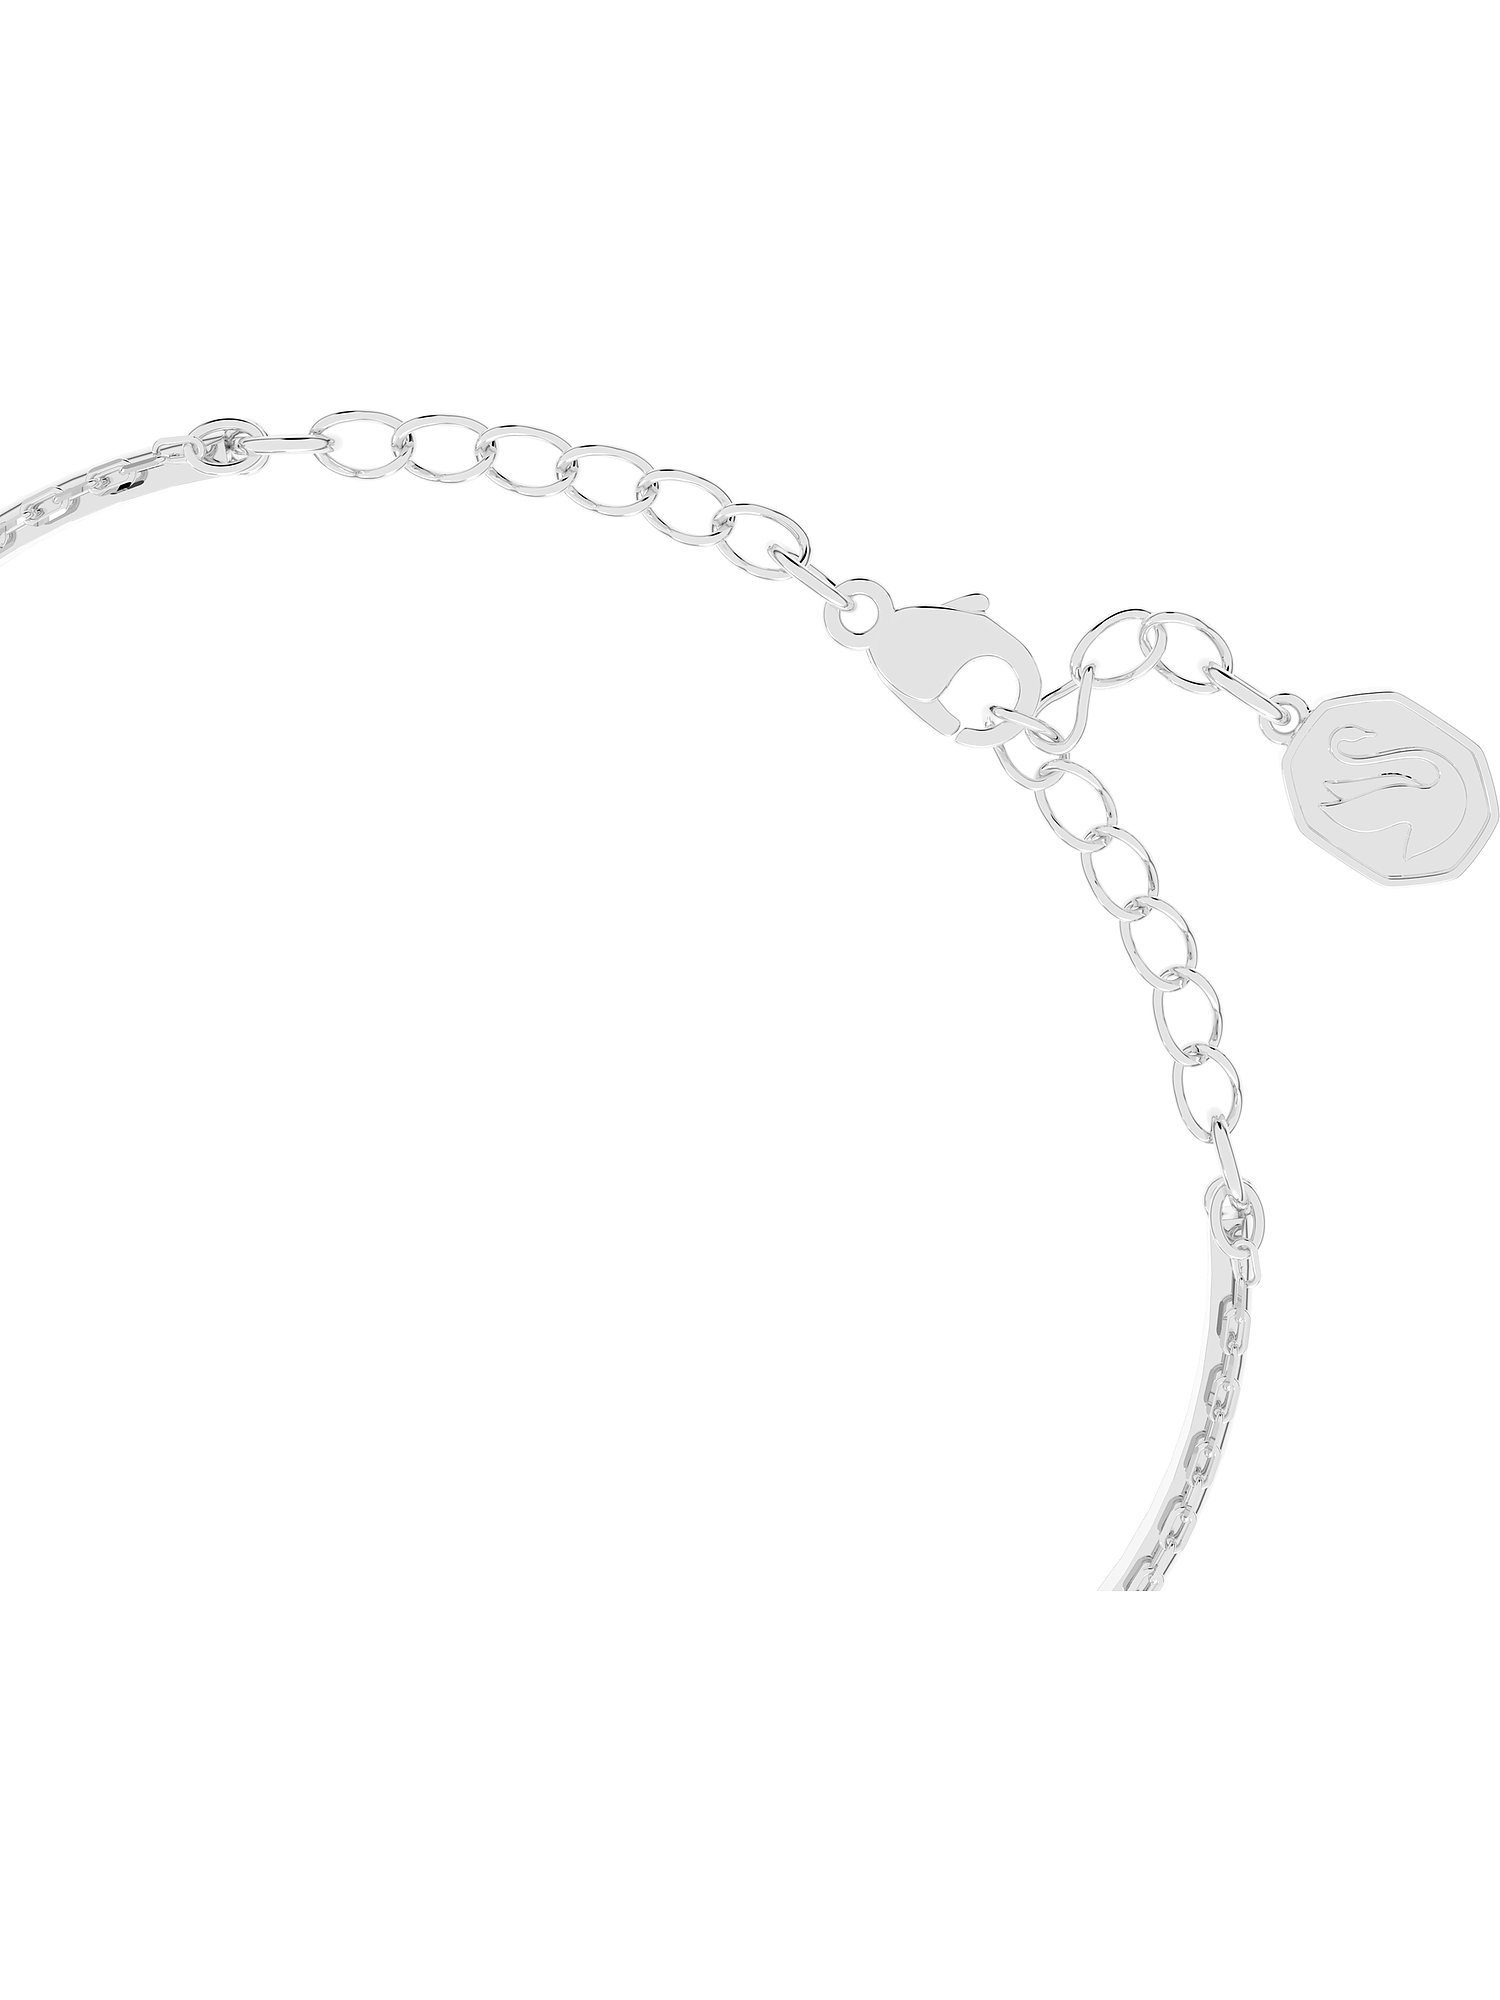 Swarovski-Kristall Swarovski Metall Damen-Armband silber Swarovski Armband